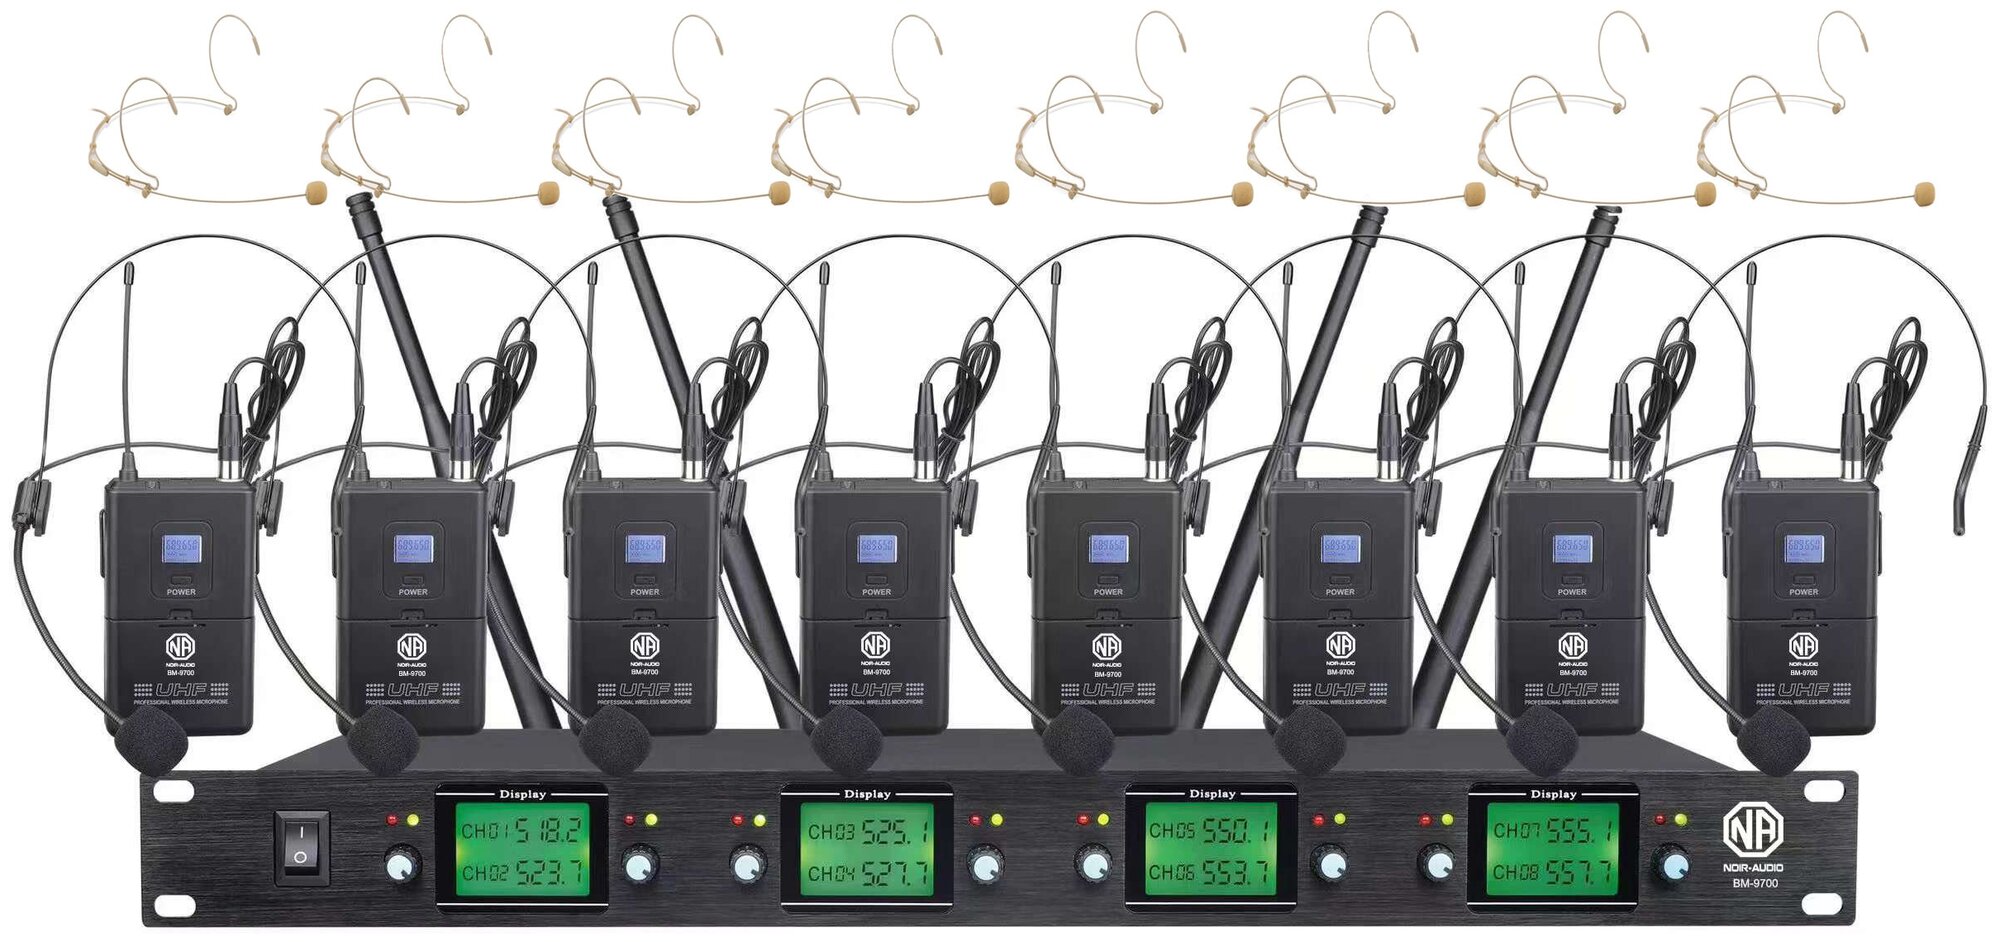 Беспроводной микрофон NOIR-audio BM-9700-HS32 с 16 беспроводными головными микрофонами